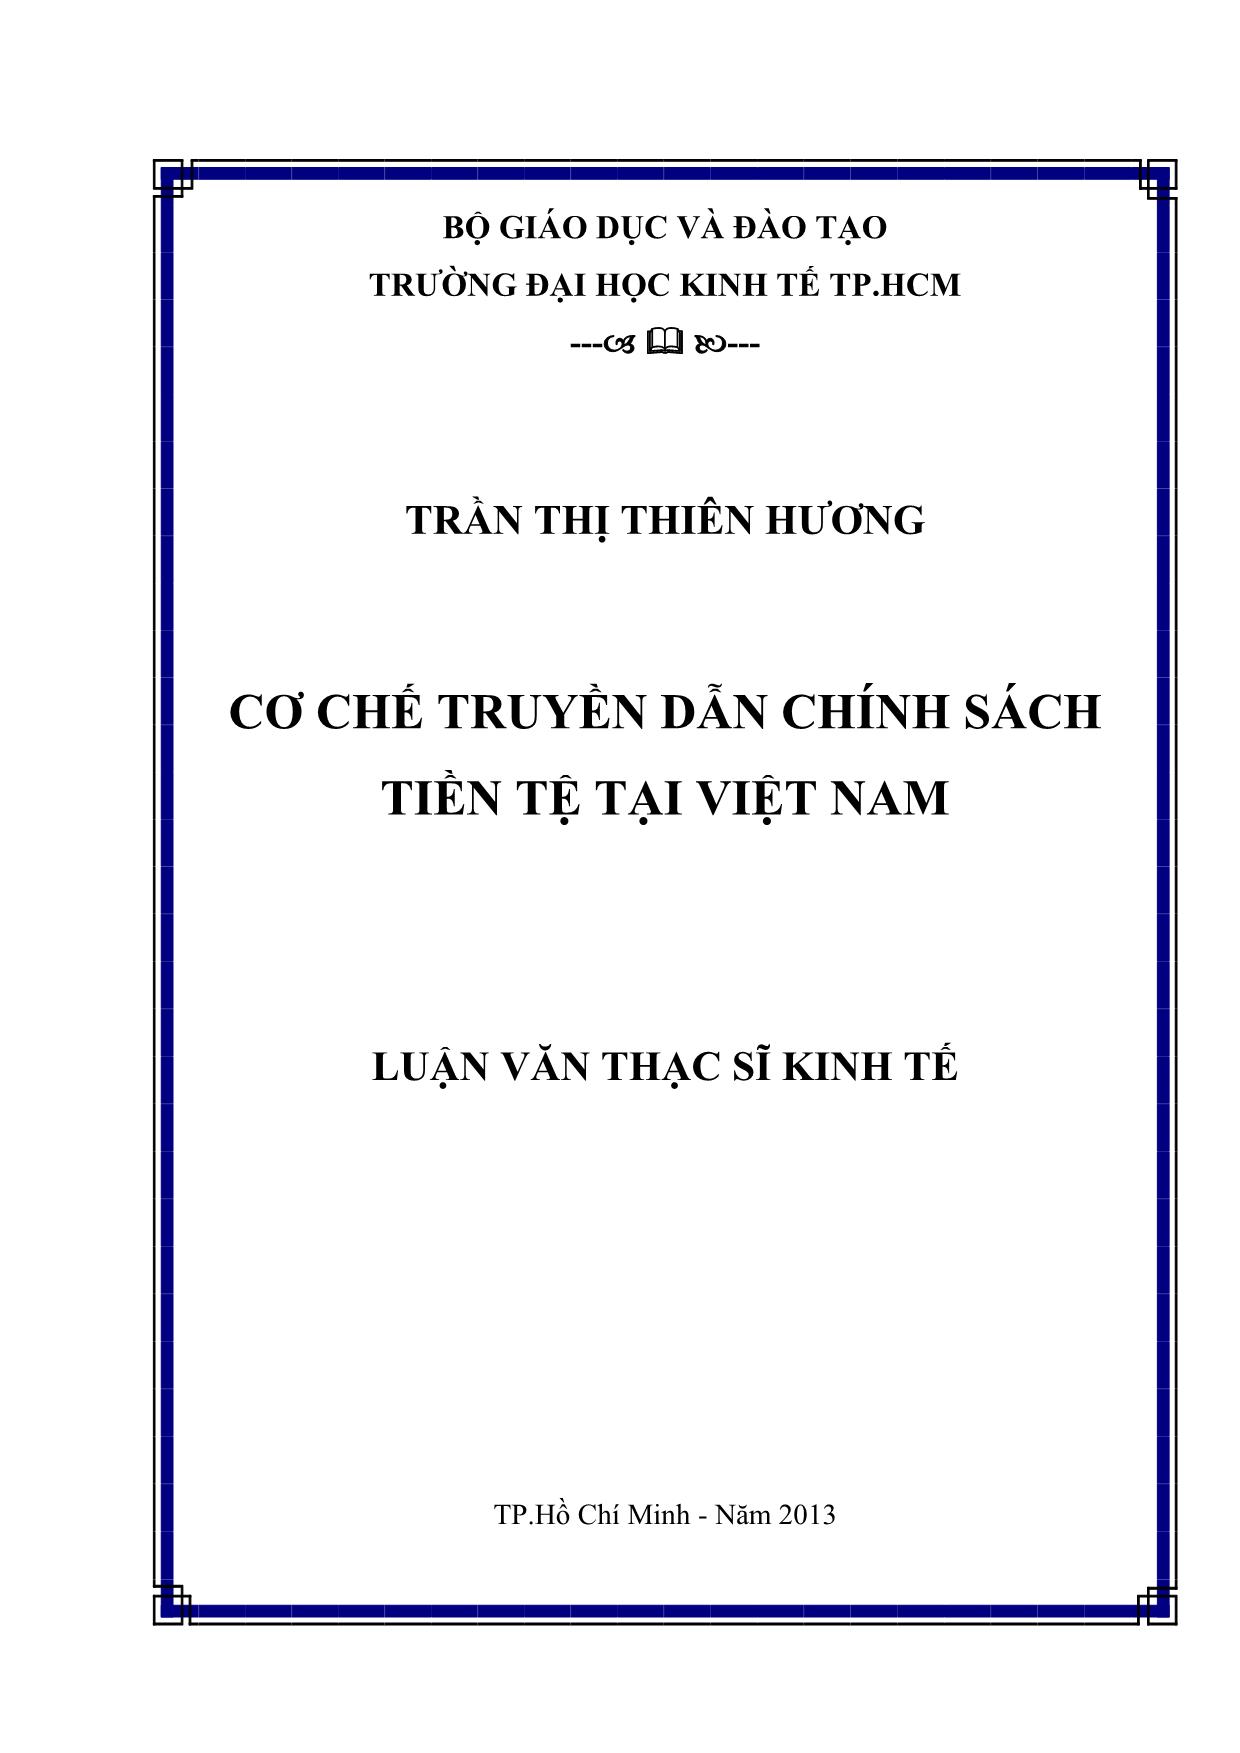 Cơ chế truyền dẫn chính sách tiền tệ tại Việt Nam trang 1